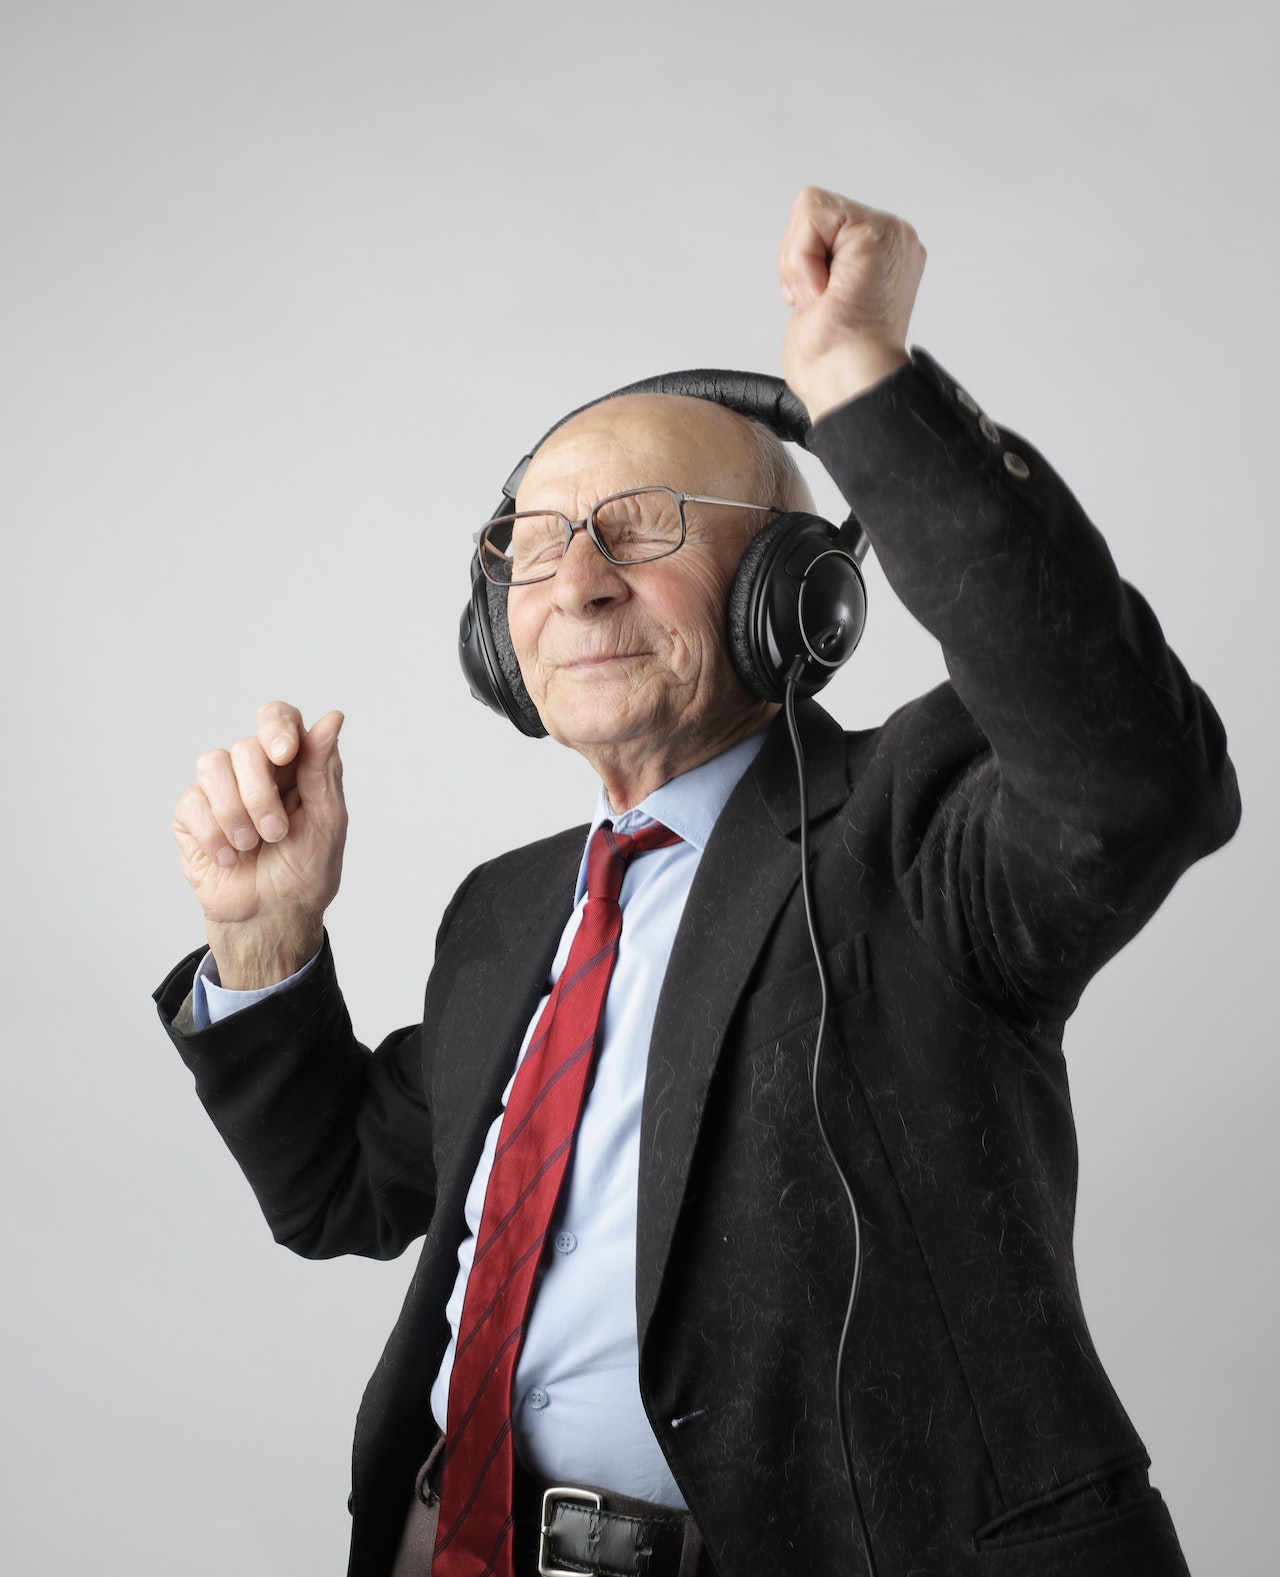 Se ha descubierto que la música mejora el estado de ánimo y la memoria en pacientes con demencia. (Andrea Piacquadio /Pexels)